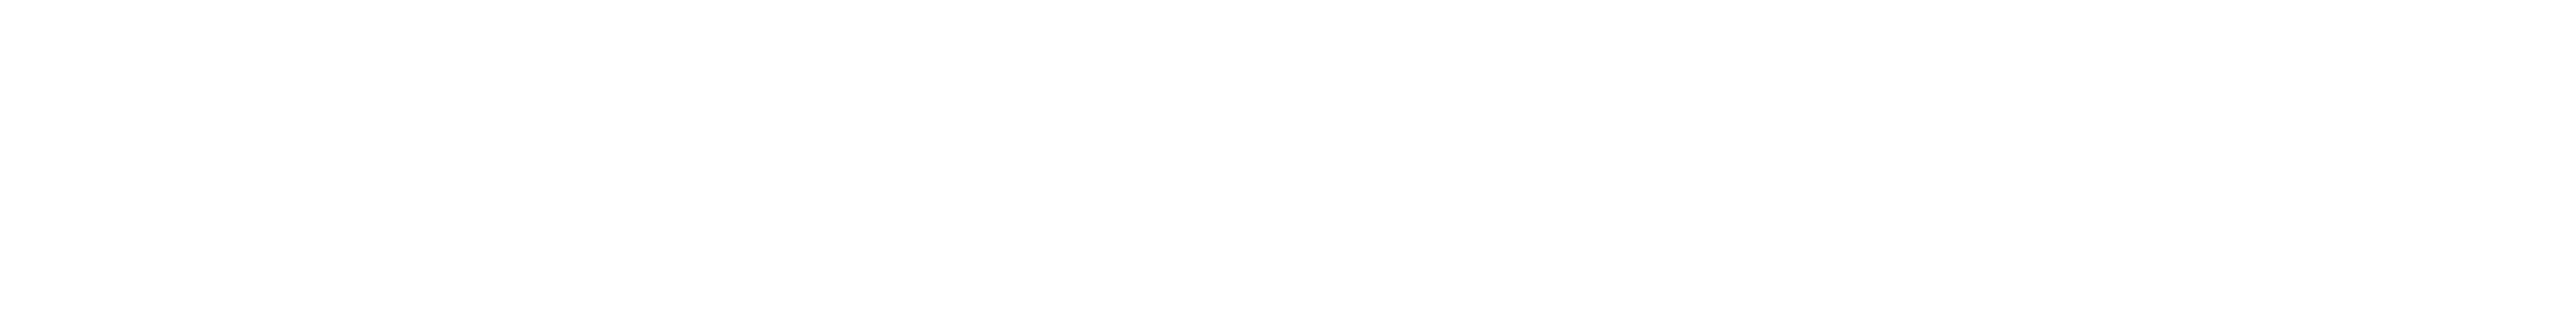 Google-Cloud-+-Meriti-blanco (1)